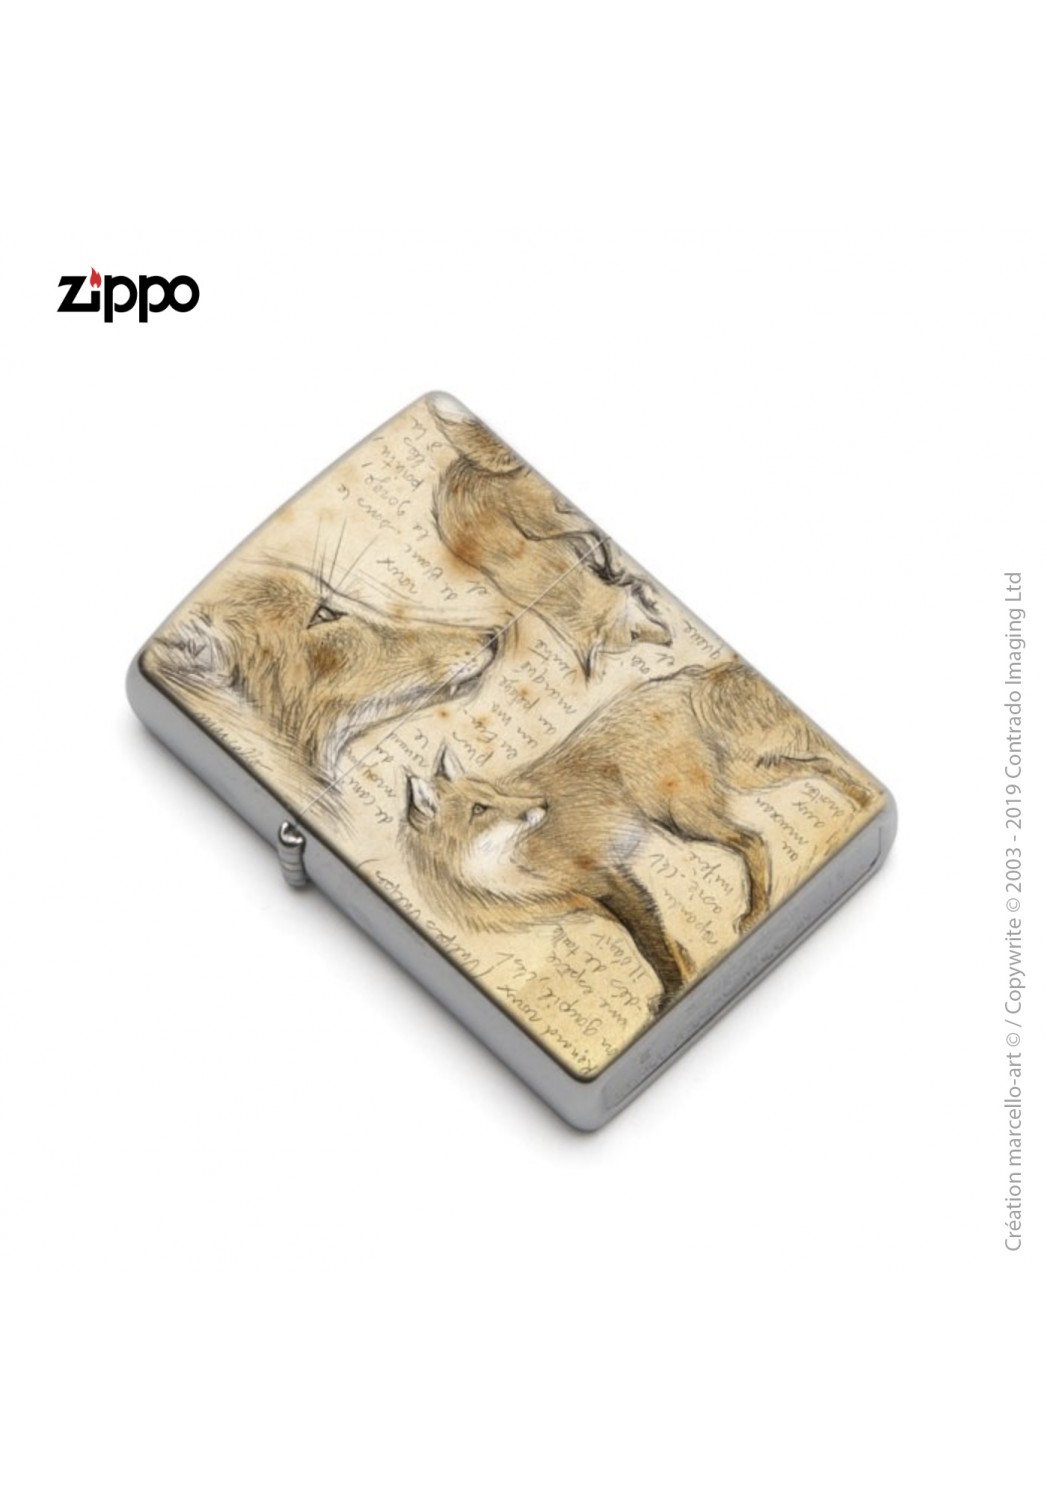 Marcello-art : Accessoires de décoration Zippo 336 renard roux